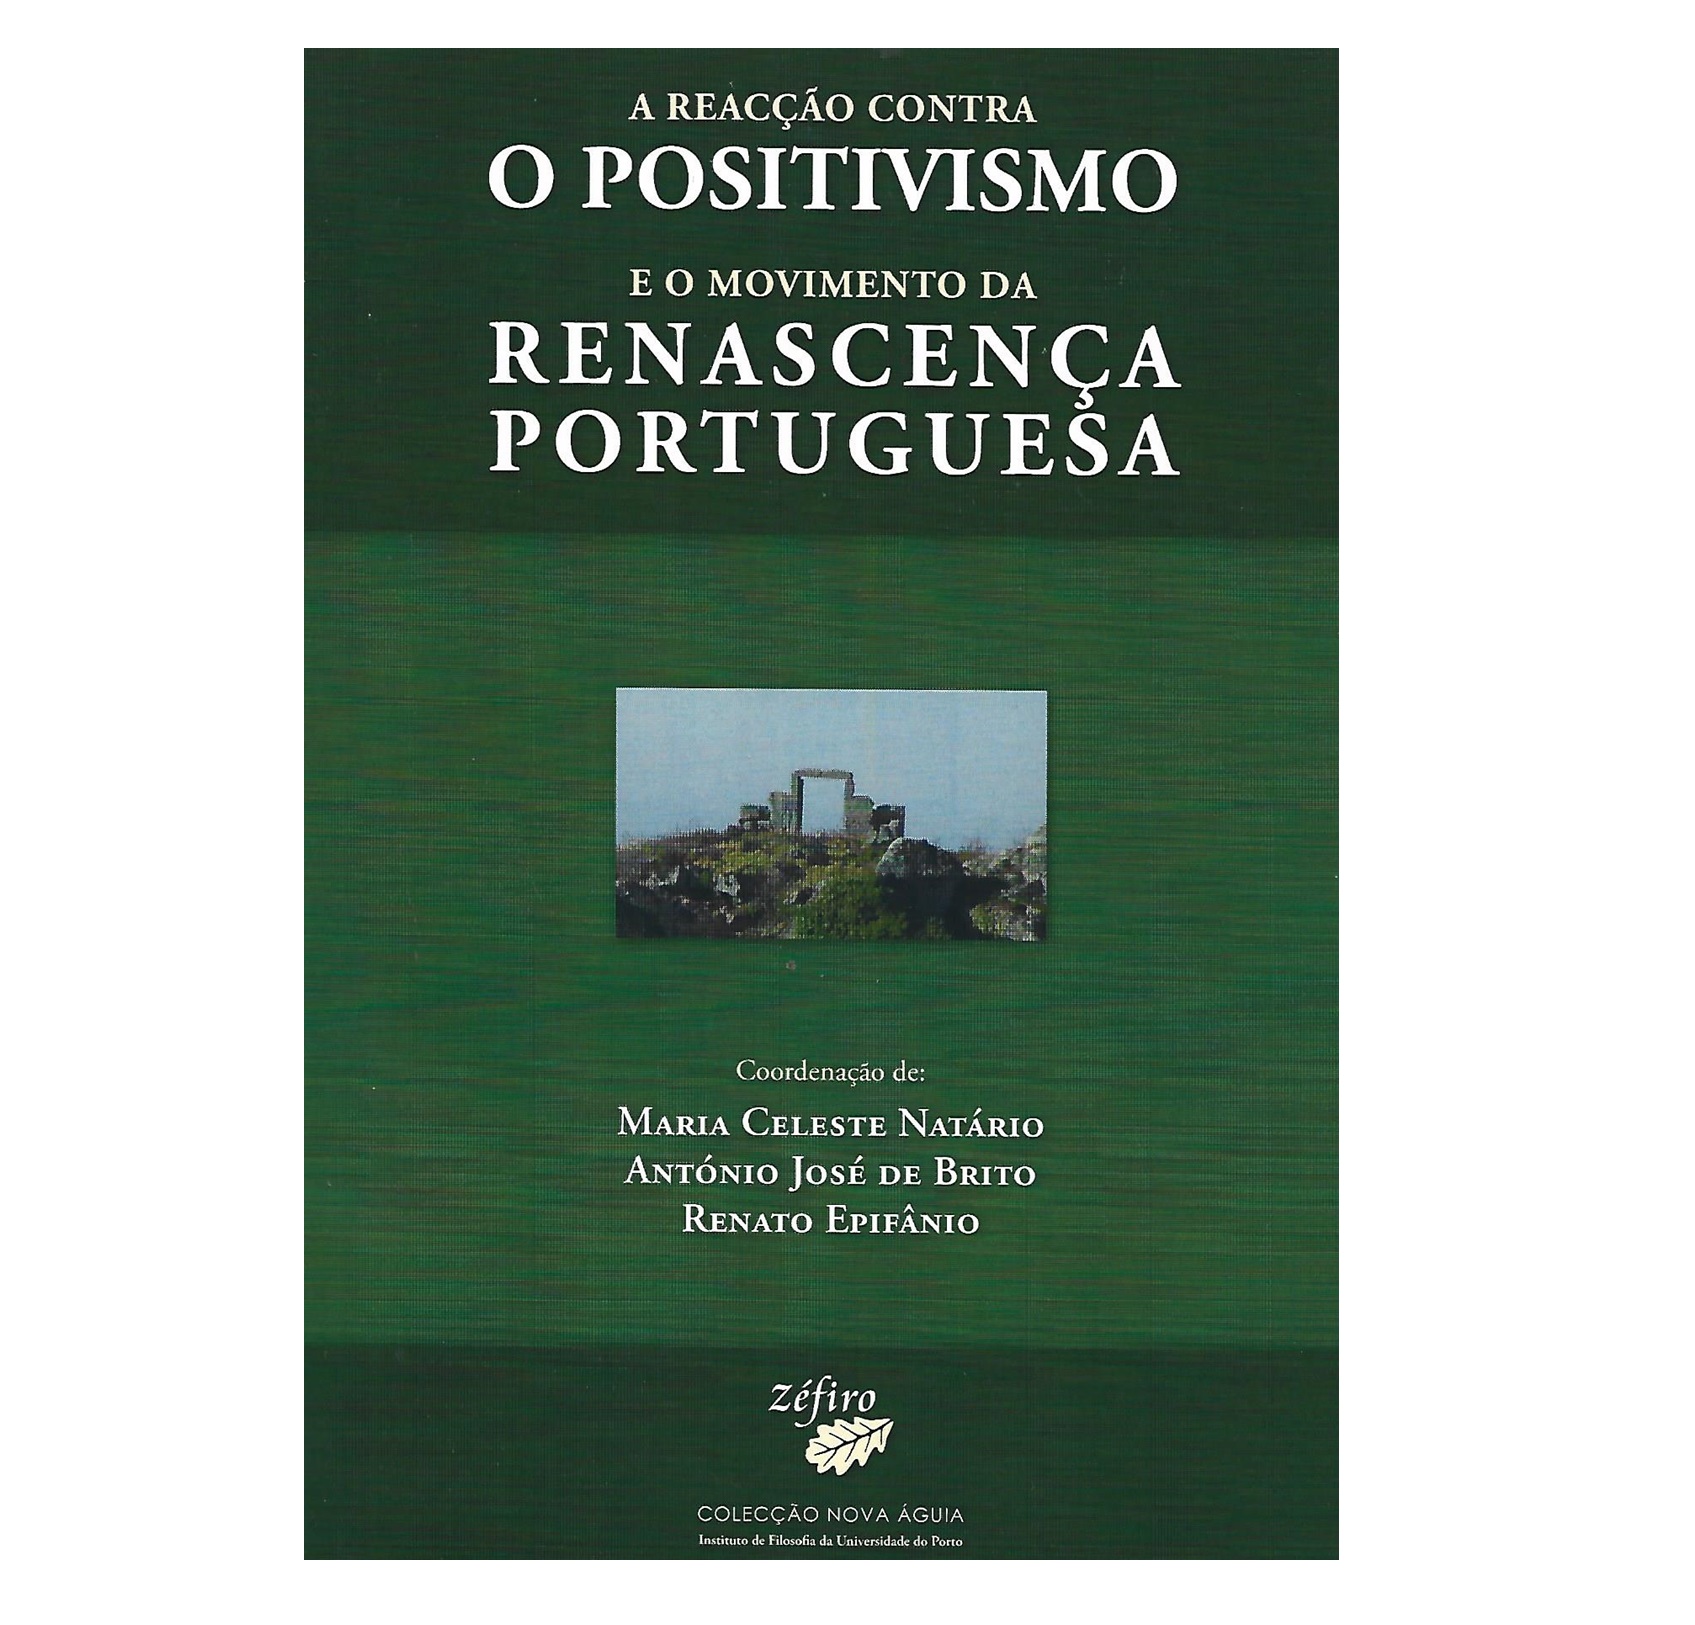 A REACÇÃO CONTRA O POSITIVISMO E O MOVIMENTO DA RENASCENÇA PORTUGUESA